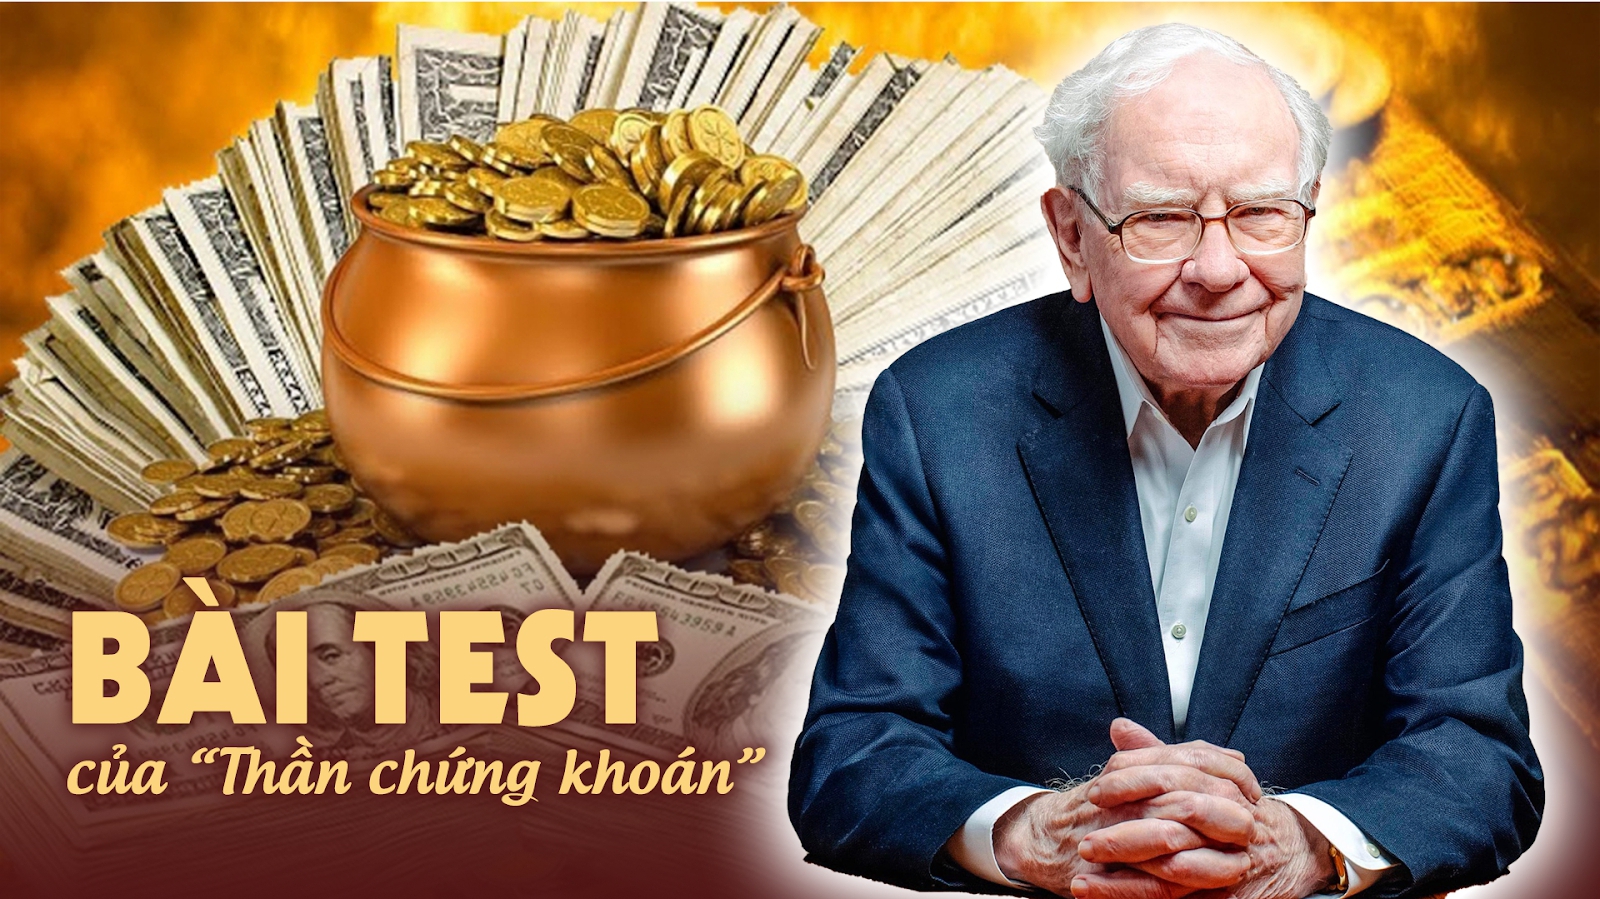 Chỉ 1 bài test trước khi đưa ra quyết định đã giúp Warren Buffett trở thành 'Thần chứng khoán': Nếu biết sớm, bạn cũng có thể giàu có hơn